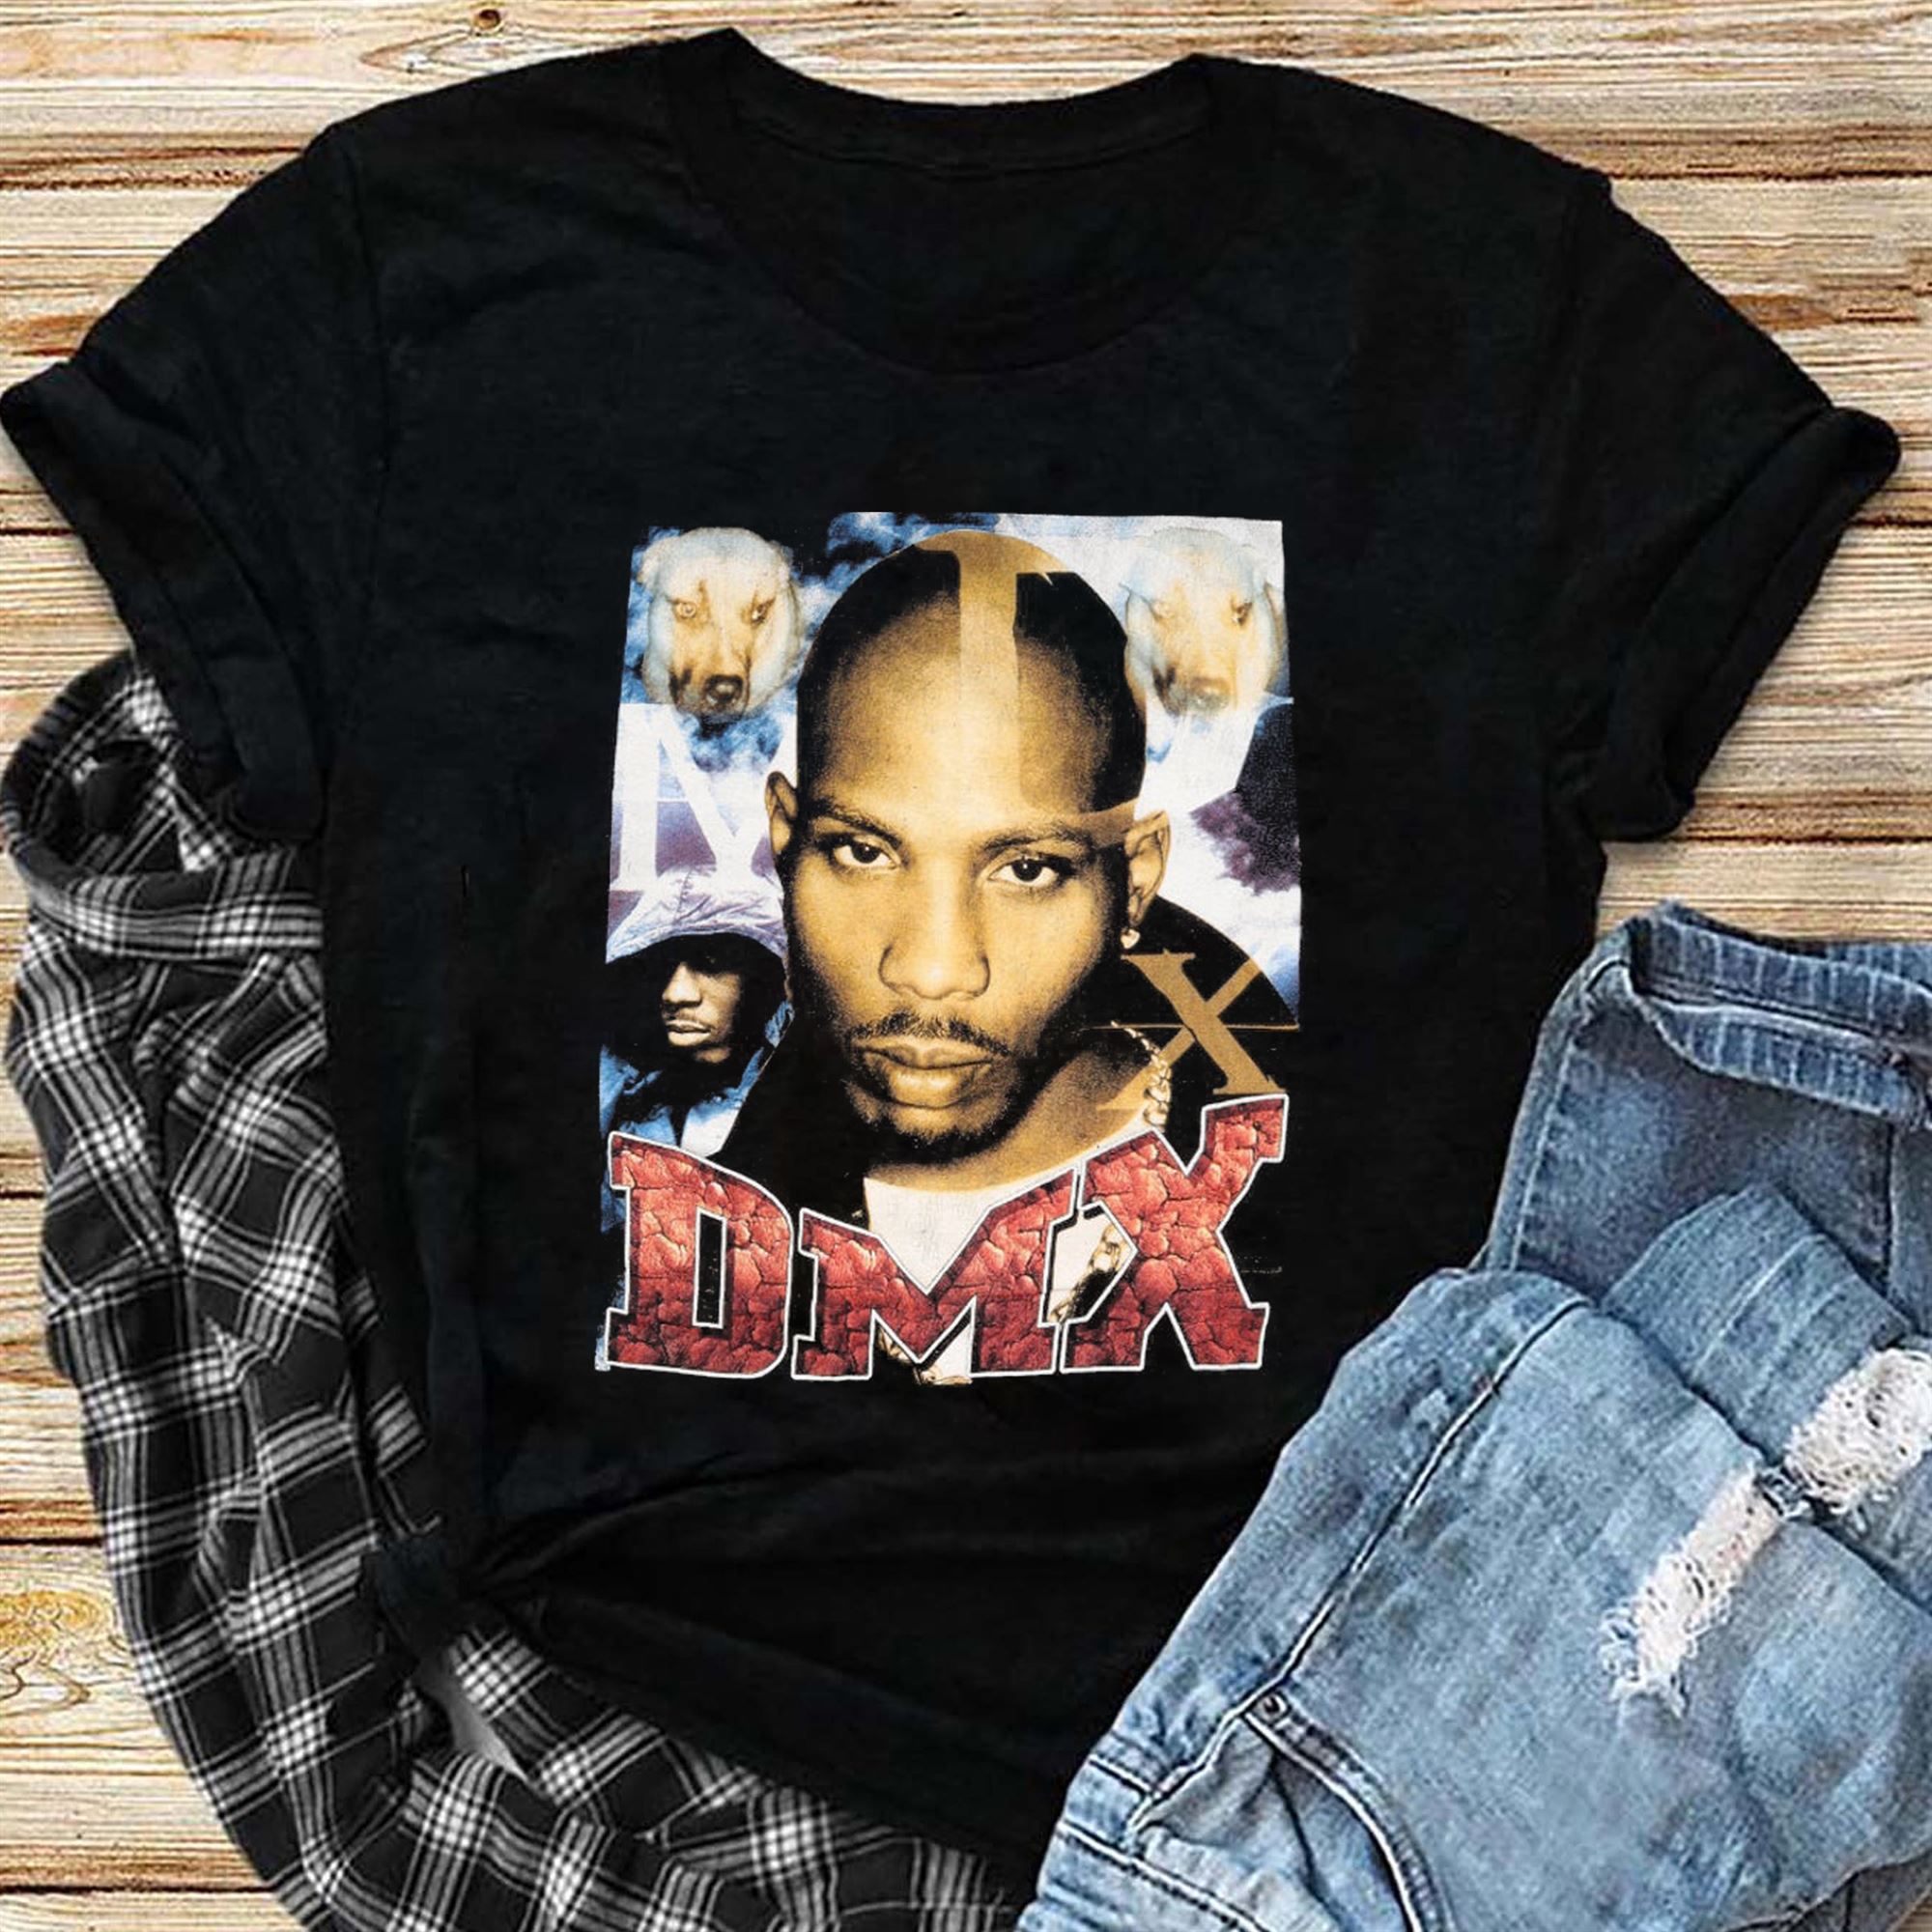 Vintage Dmx Rapper 90s Shirt - Luxwoo.com